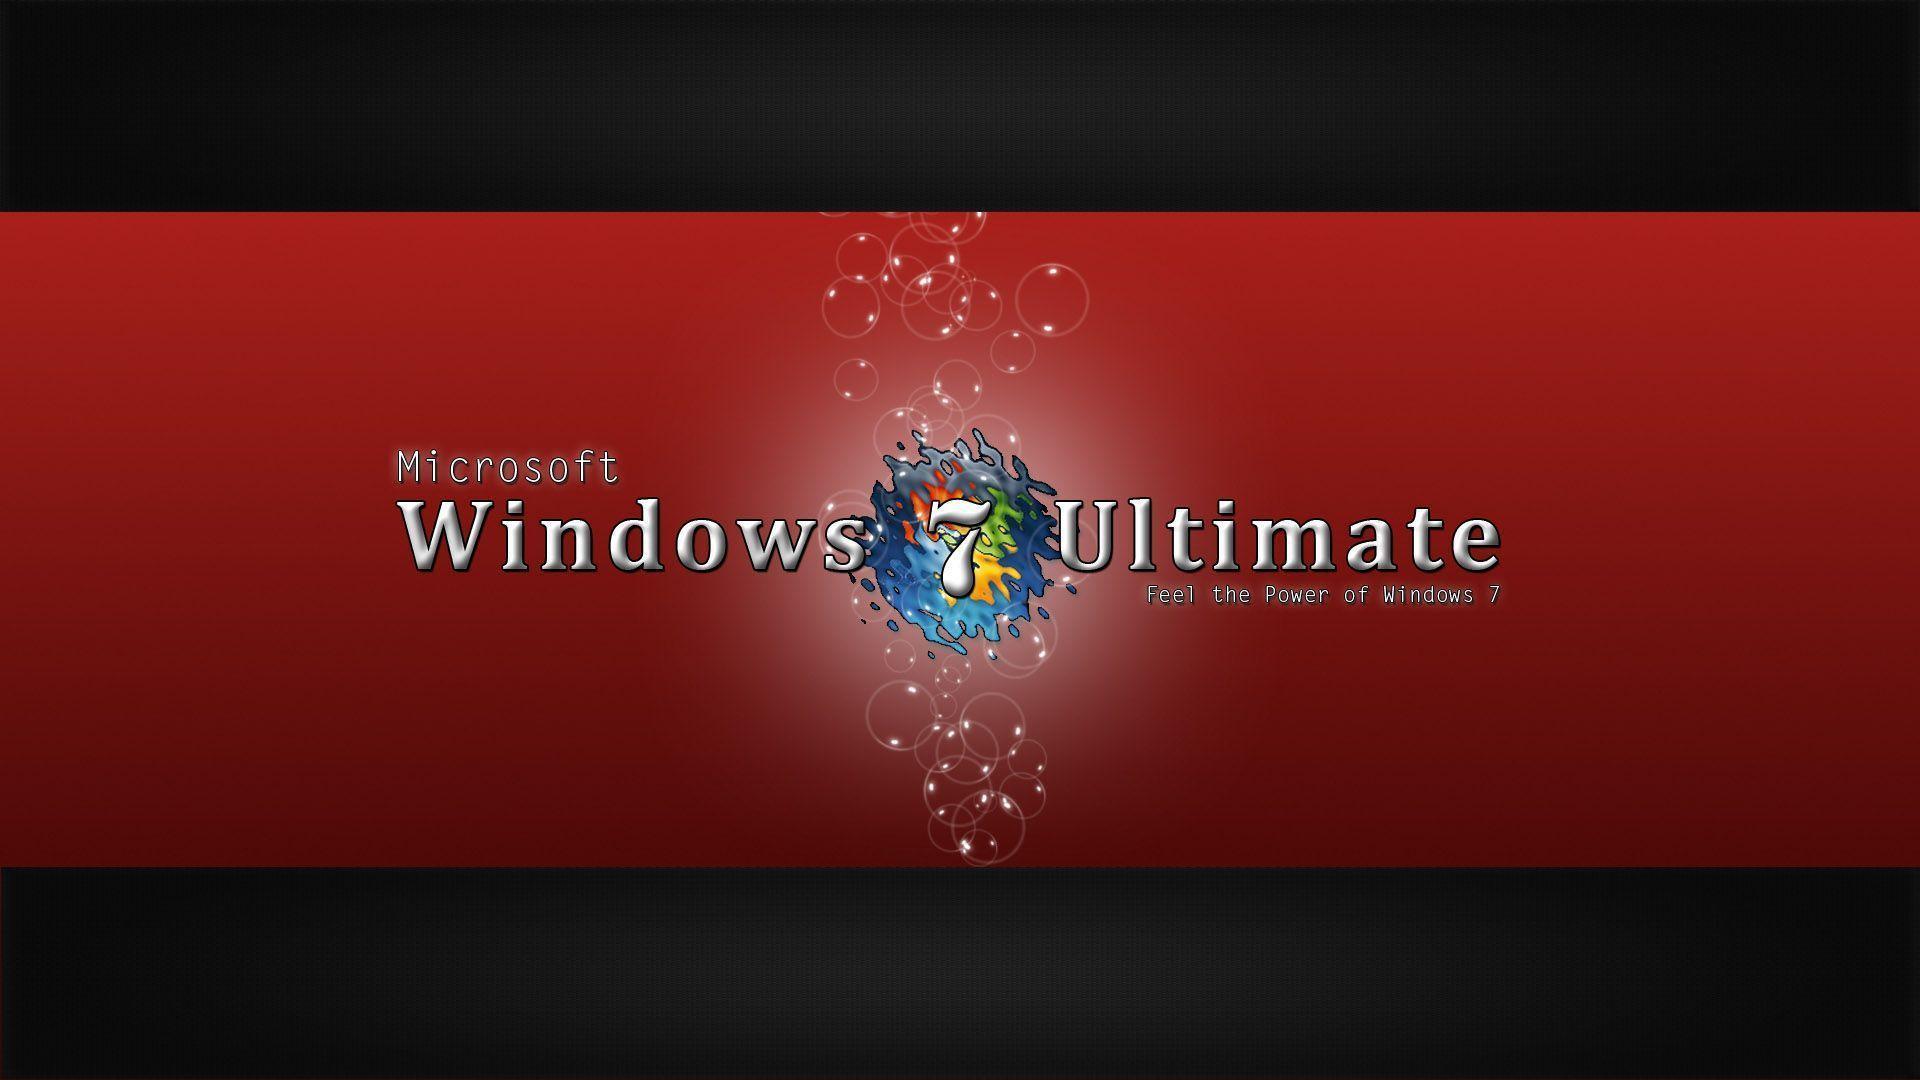 Windows 7 Ultimate Image Windows 7 Ultimate 64 Bit